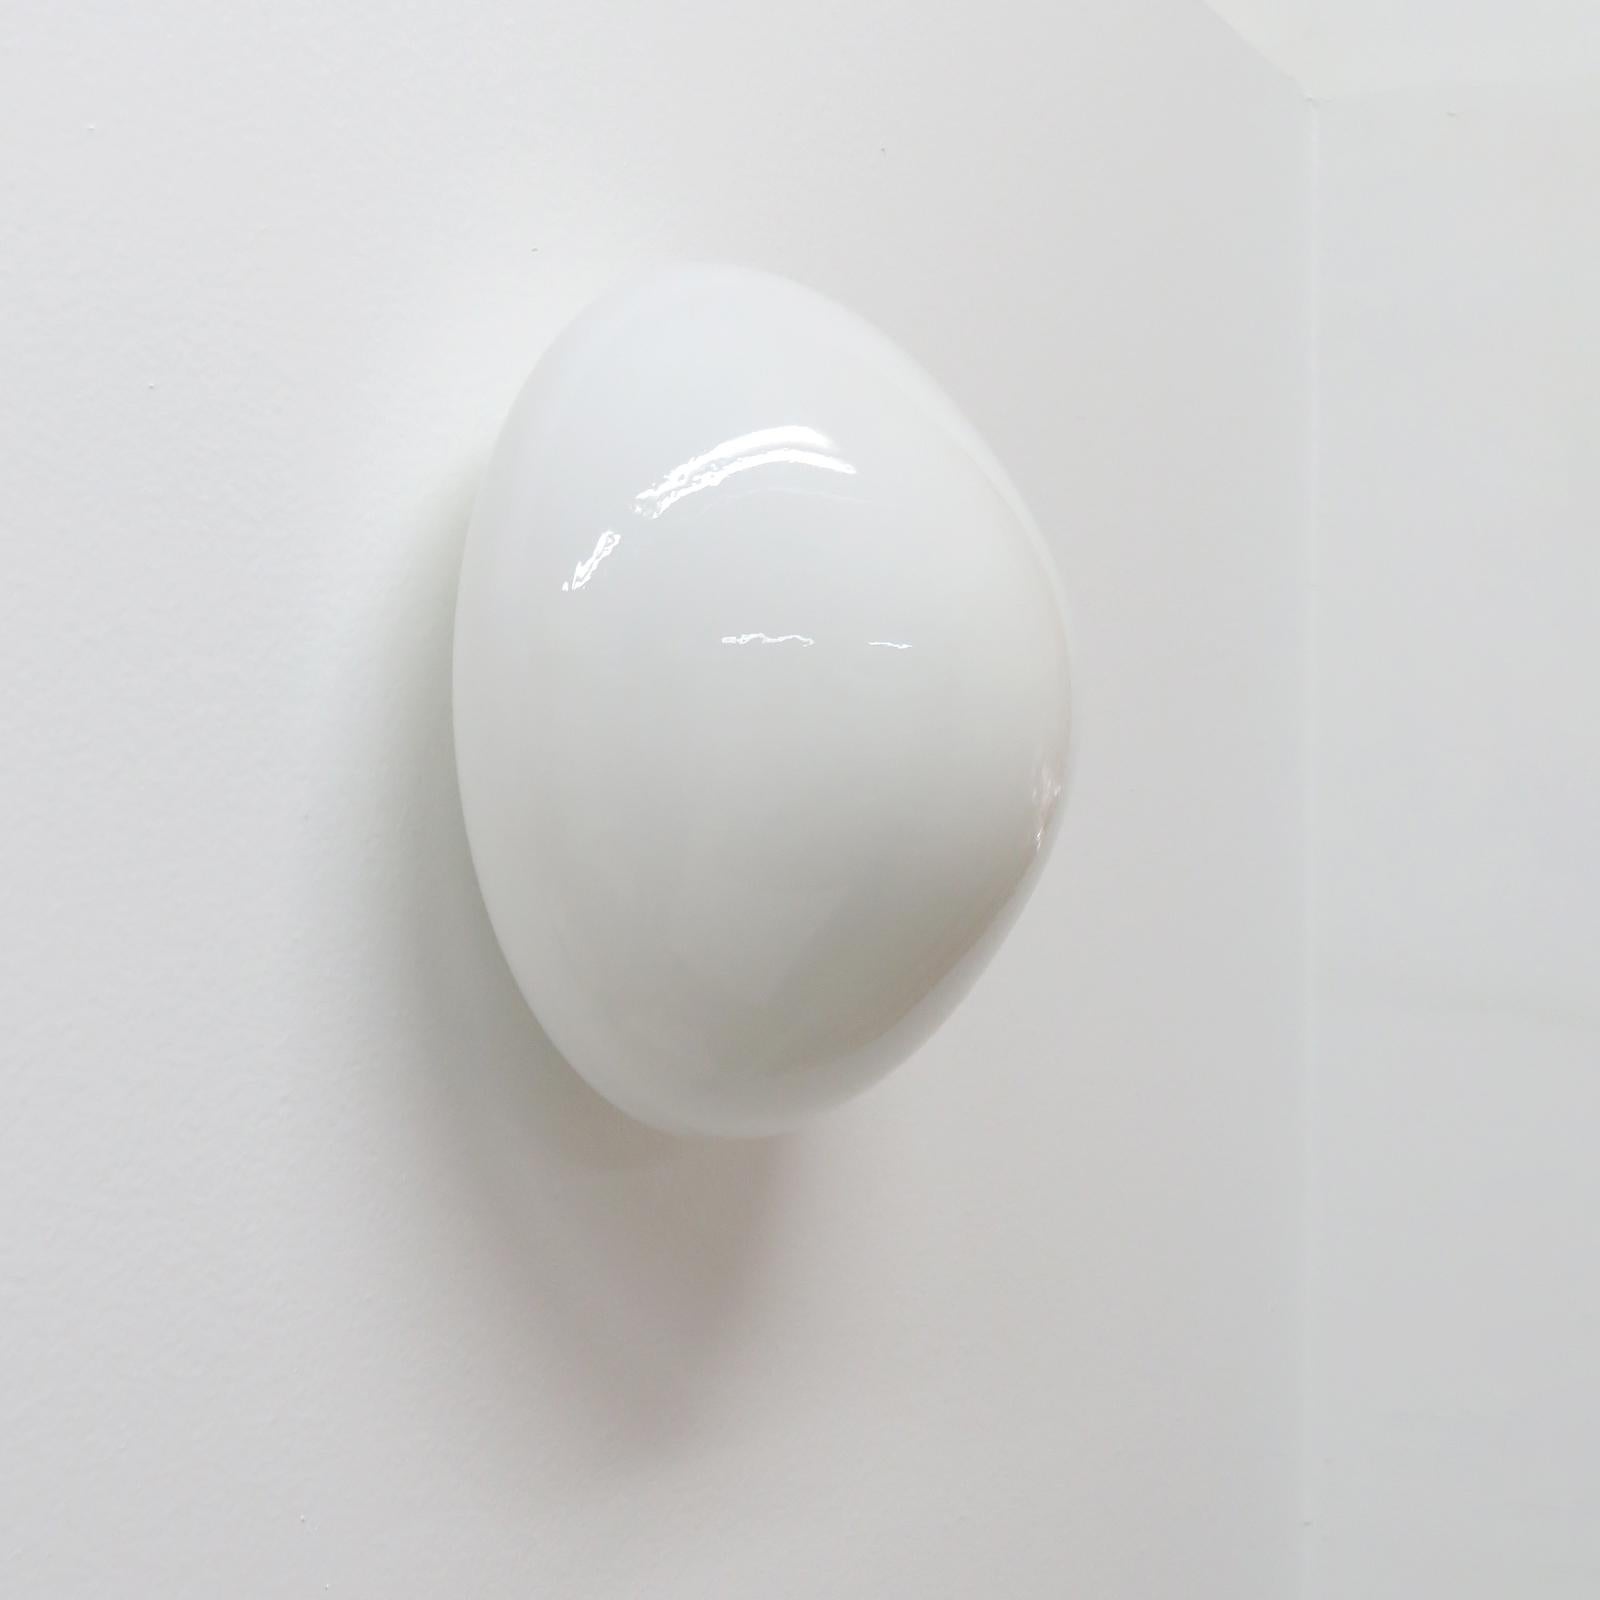 Magnifiques appliques murales rondes modèle NWL 961, conçues par Wilhelm Wagenfeld pour Lindner, 1950, avec des abat-jour en verre blanc moulé en forme de goutte et une base en porcelaine - parfaites pour toute salle de bains. Une douille E26,